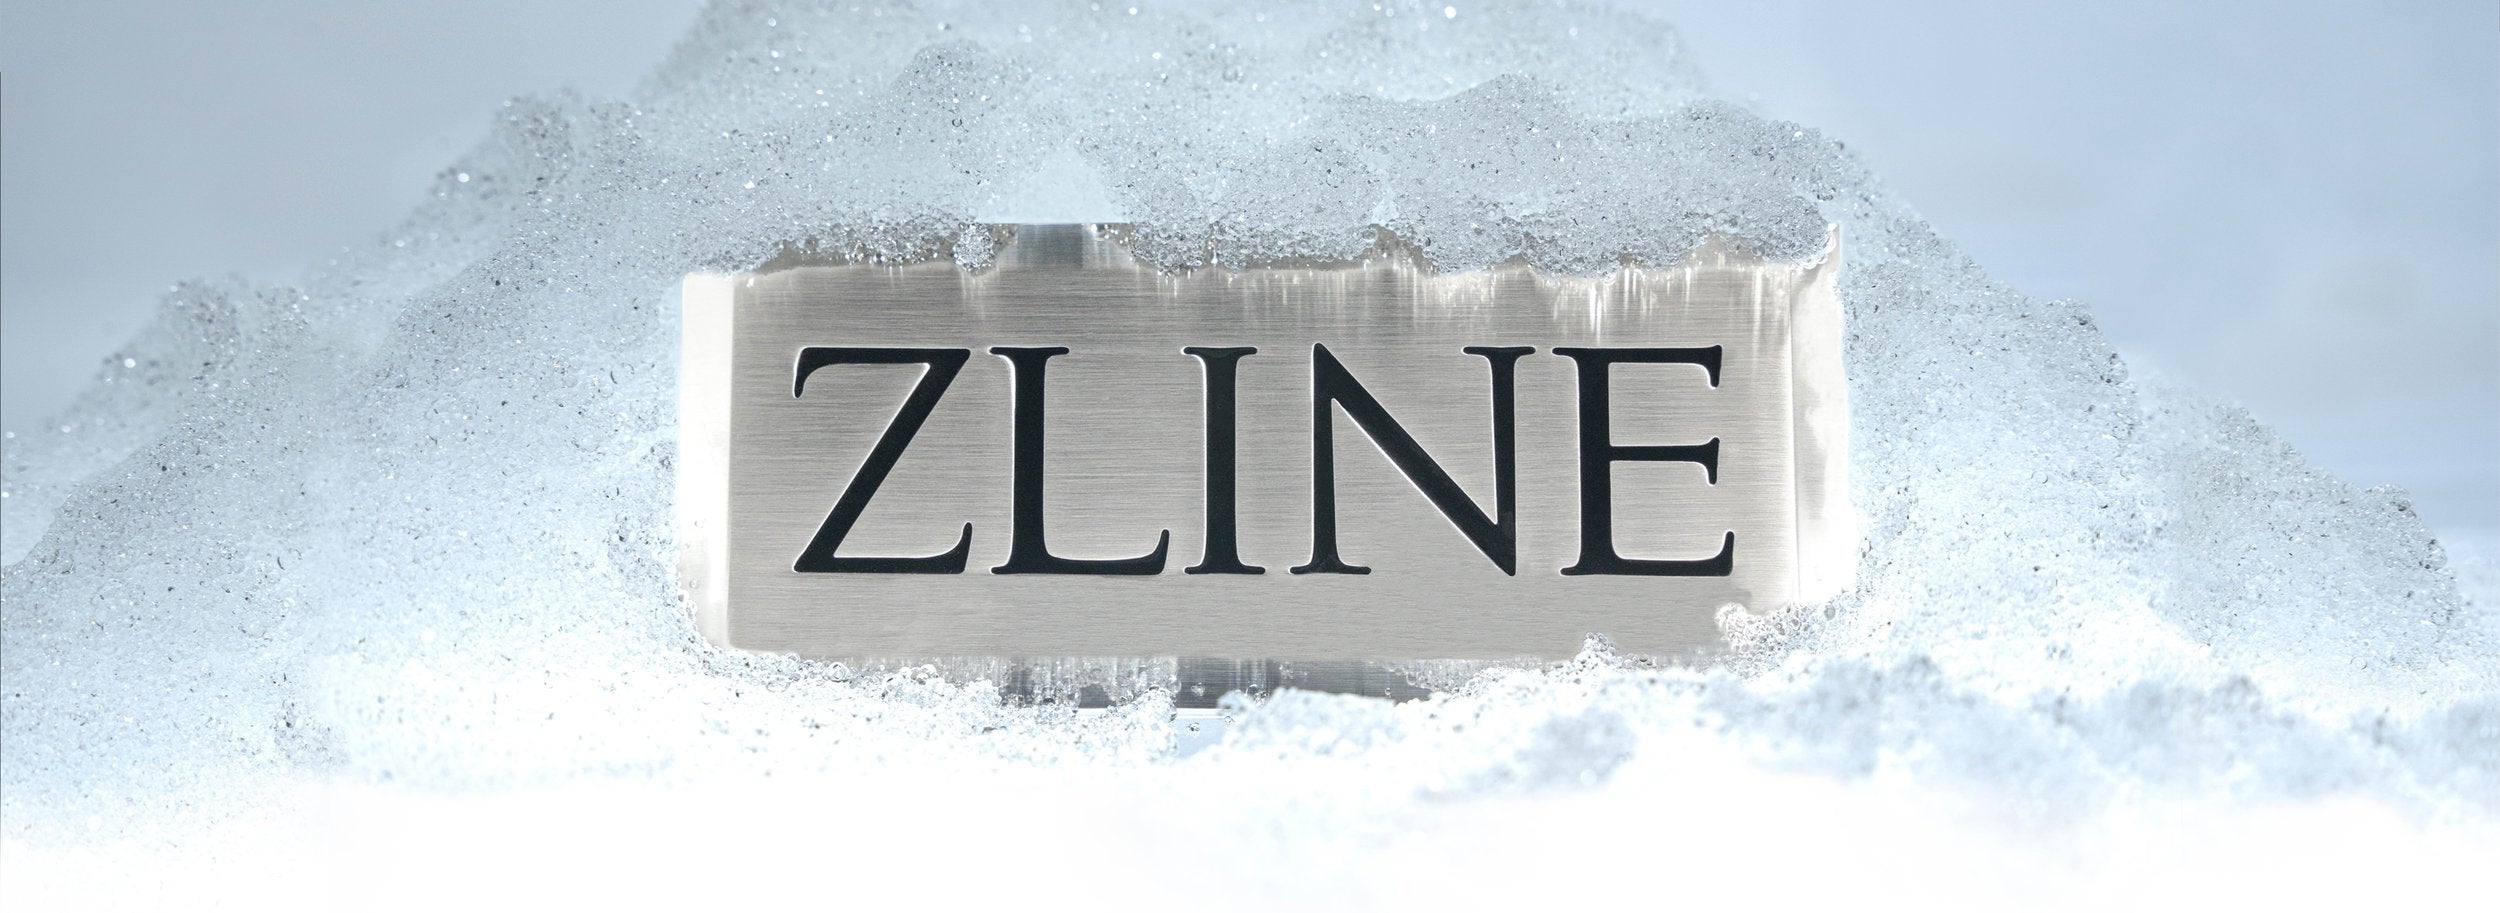 ZLINE Logo frozen in ice